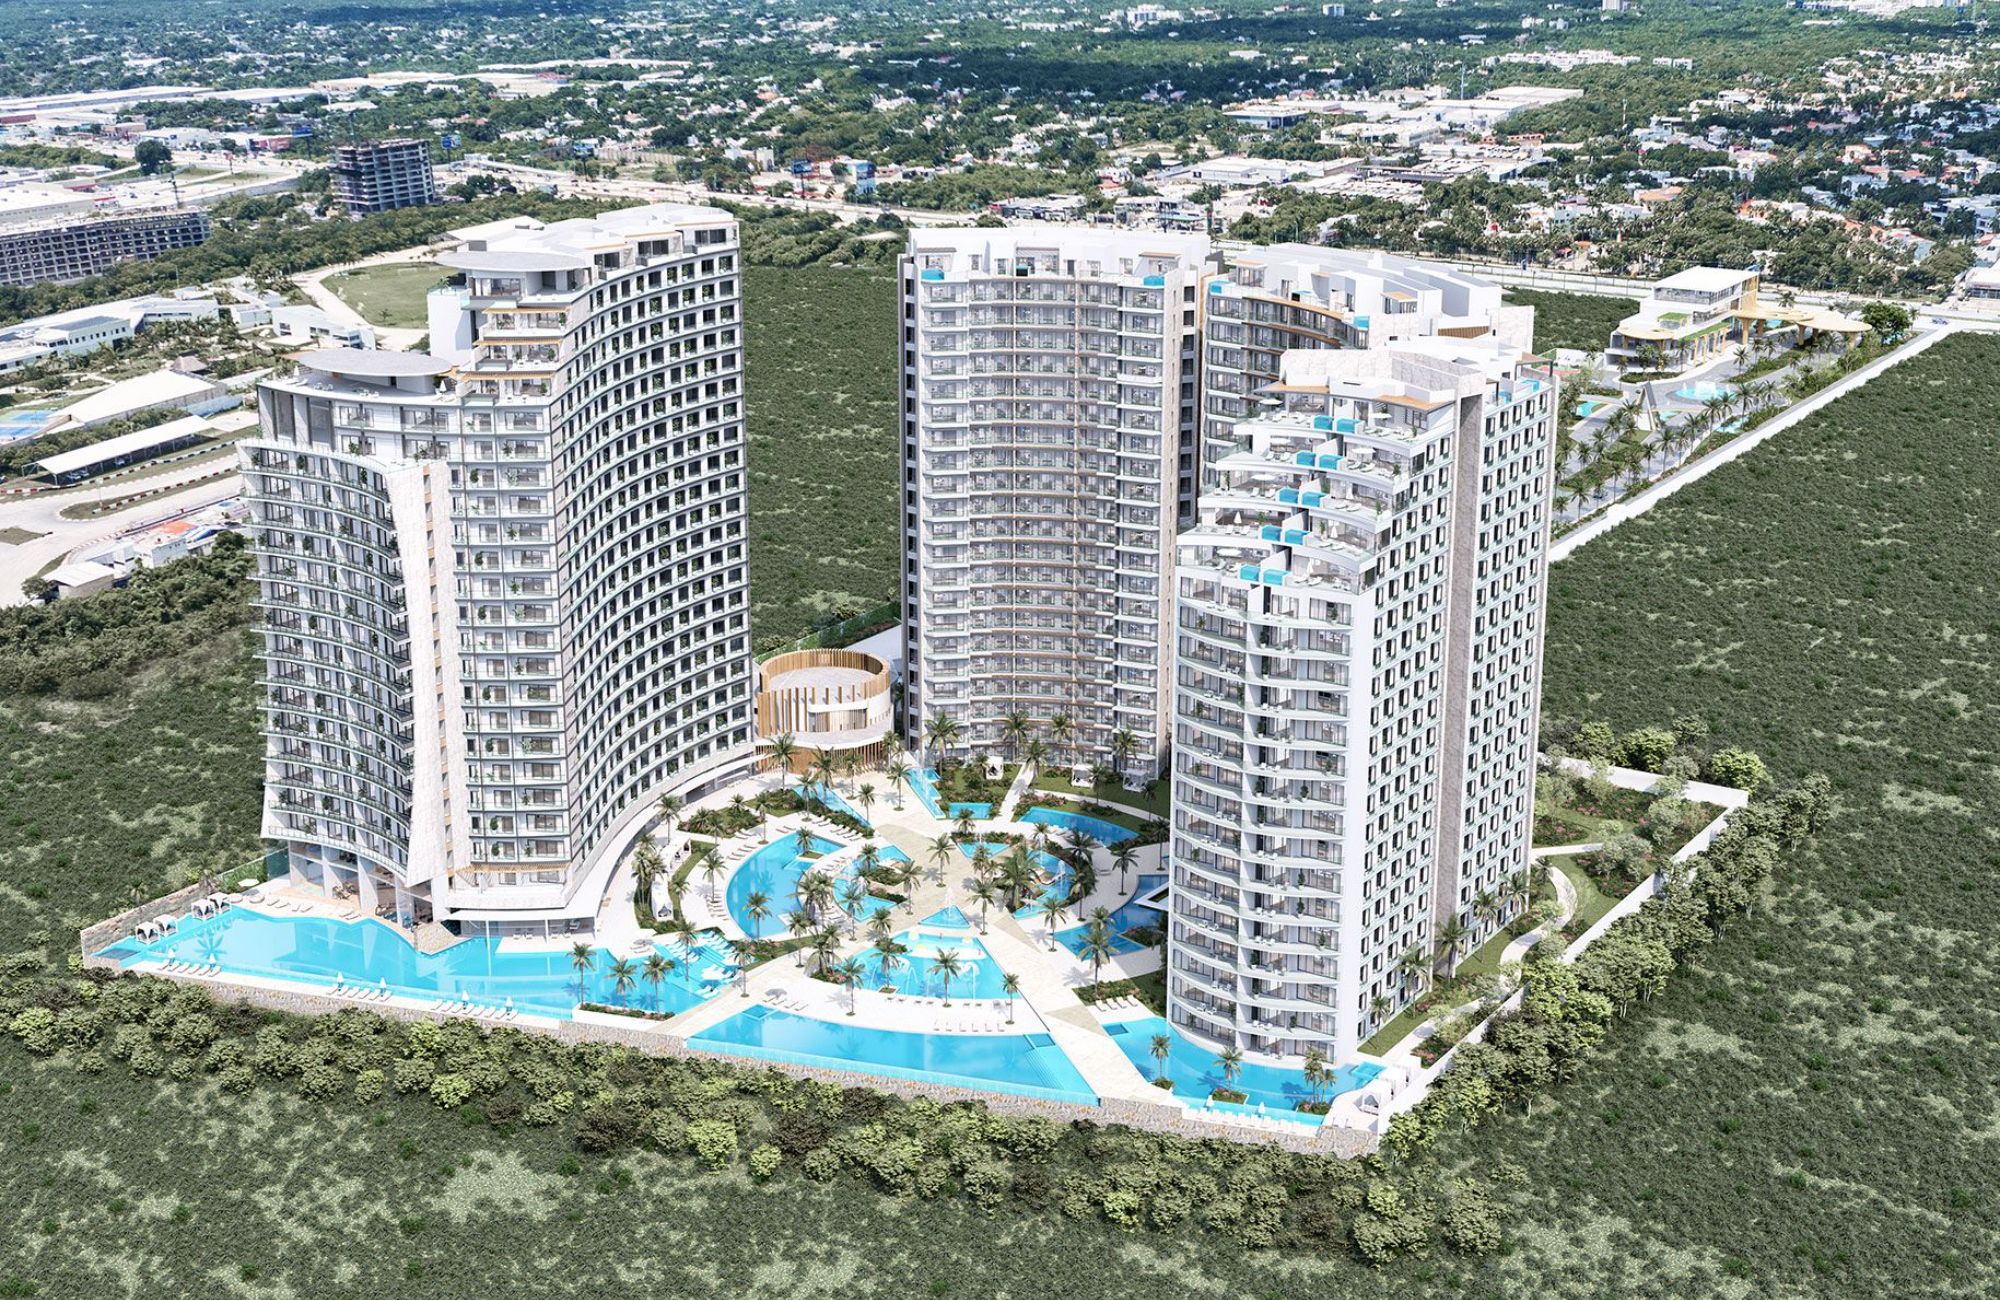 Departamento con dos terrazas, alberca, Gimnasio, pre-construccion, venta, Cancun.